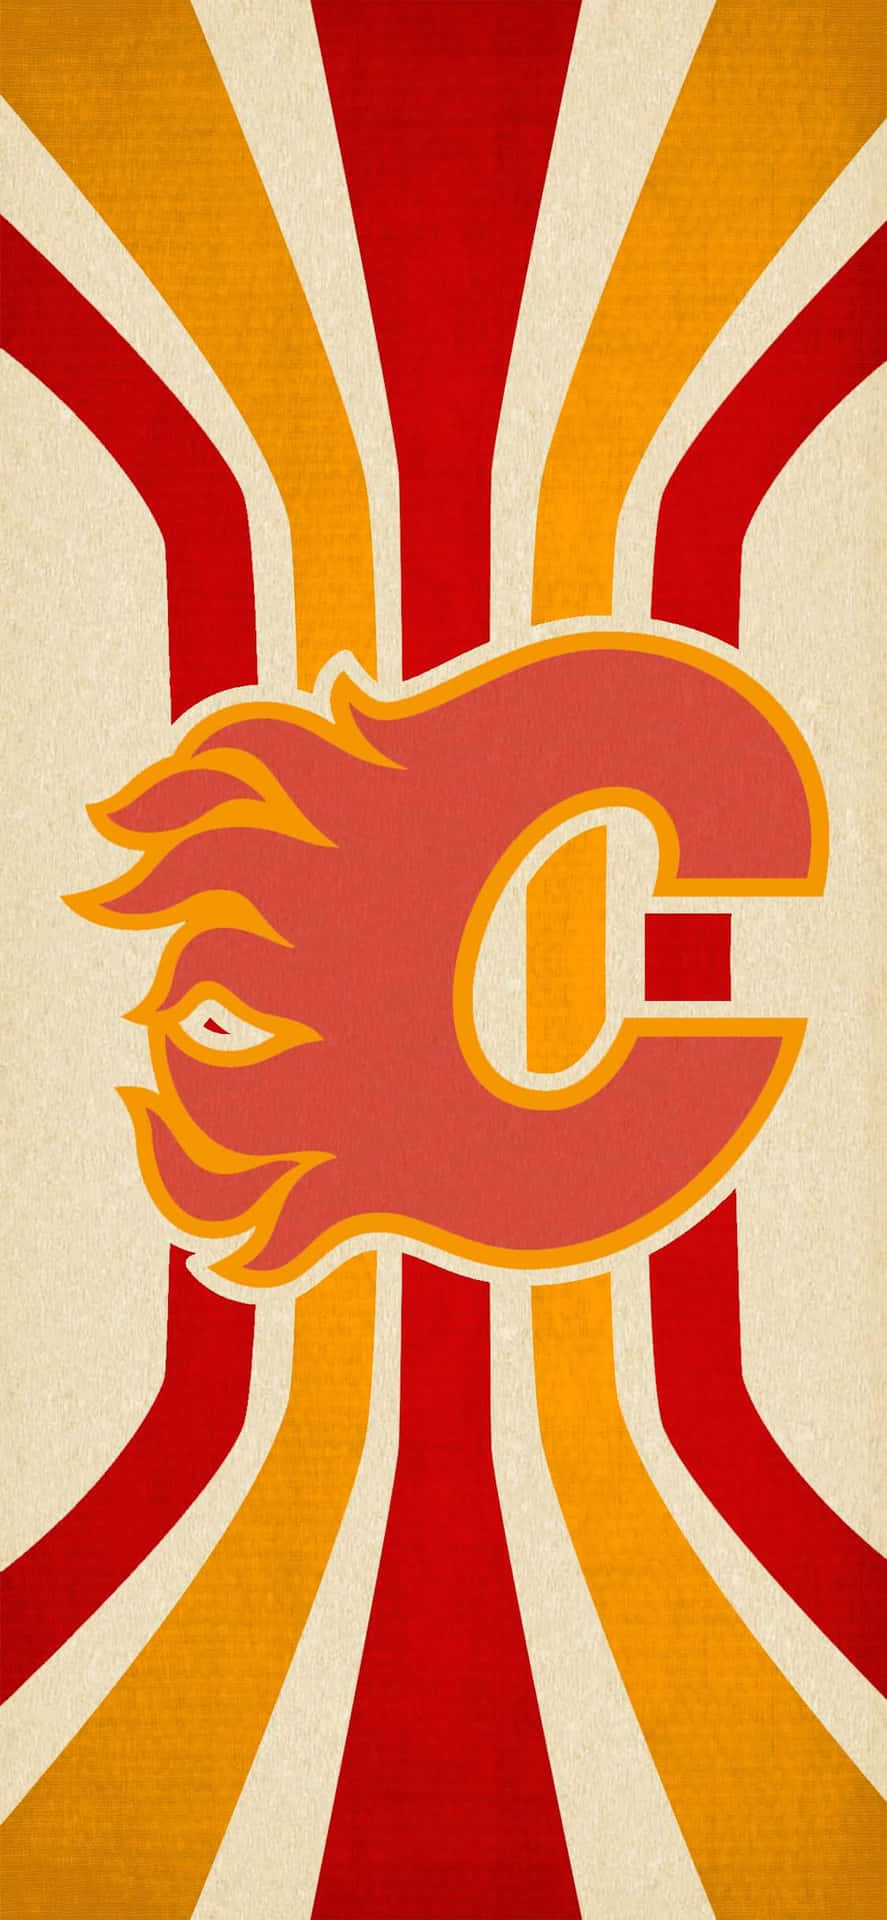 Enplakat Med Calgary Flames-logoet På Det.